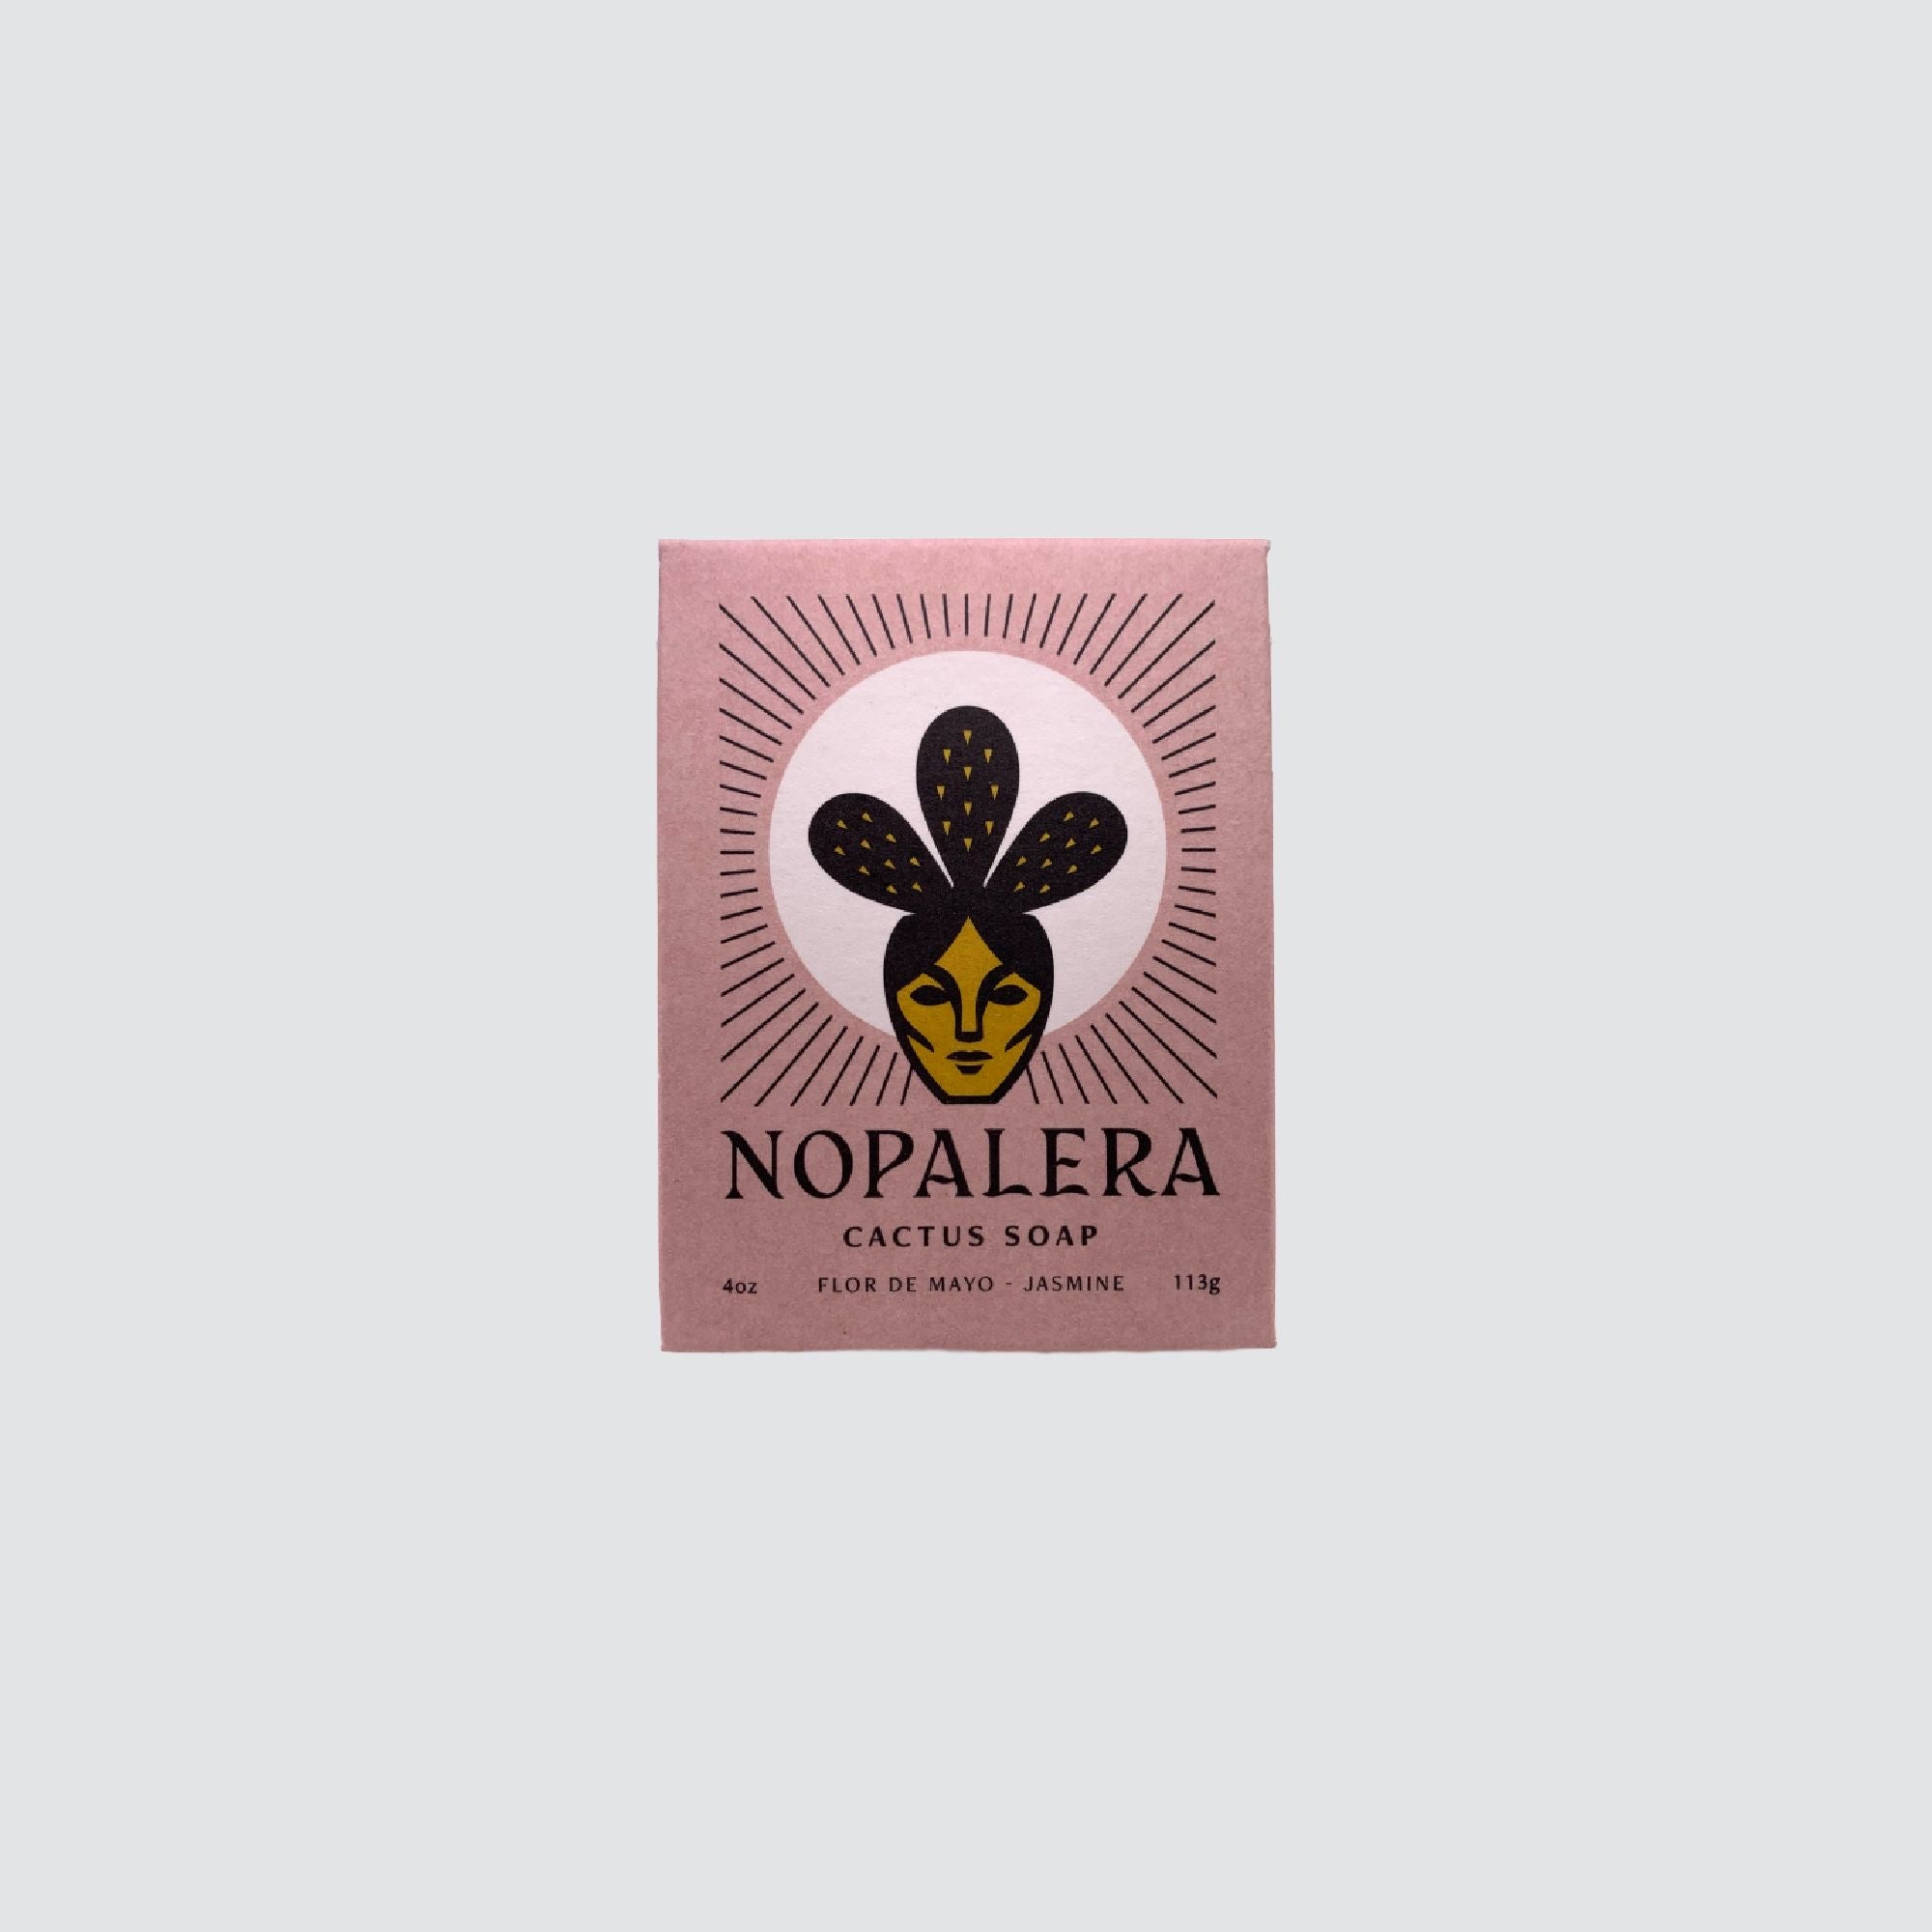 NOPALERA // CACTUS SOAP // FLOR DE MAYO